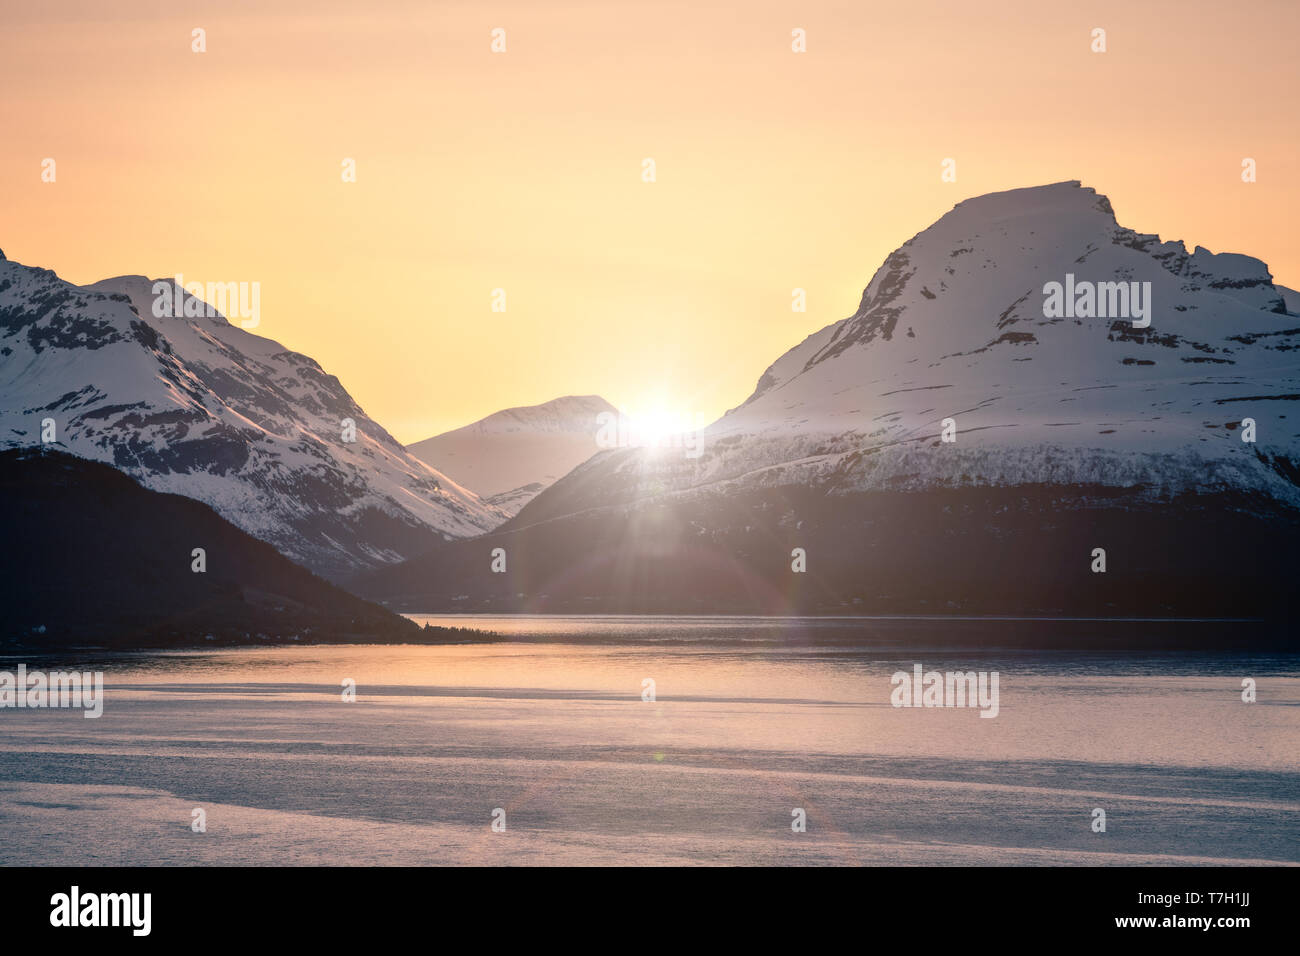 Schneebedeckte Berge und den Fjord bei Sonnenuntergang mit Lens flare Effekt Stockfoto